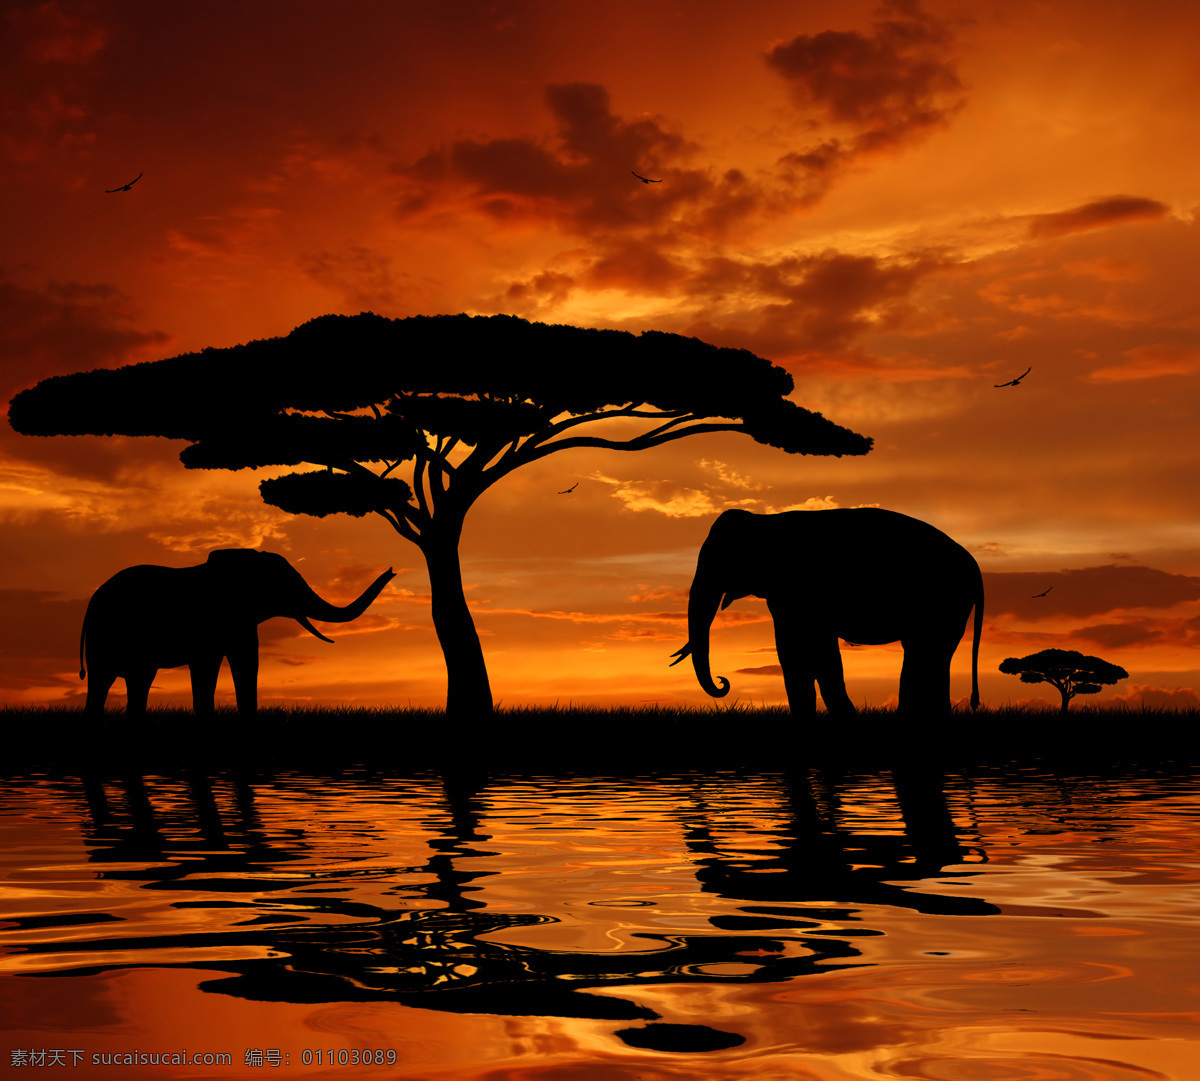 非洲 草原 上 大象 非洲草原风景 非洲动物 美丽风景 黄昏 动物剪影 陆地动物 生物世界